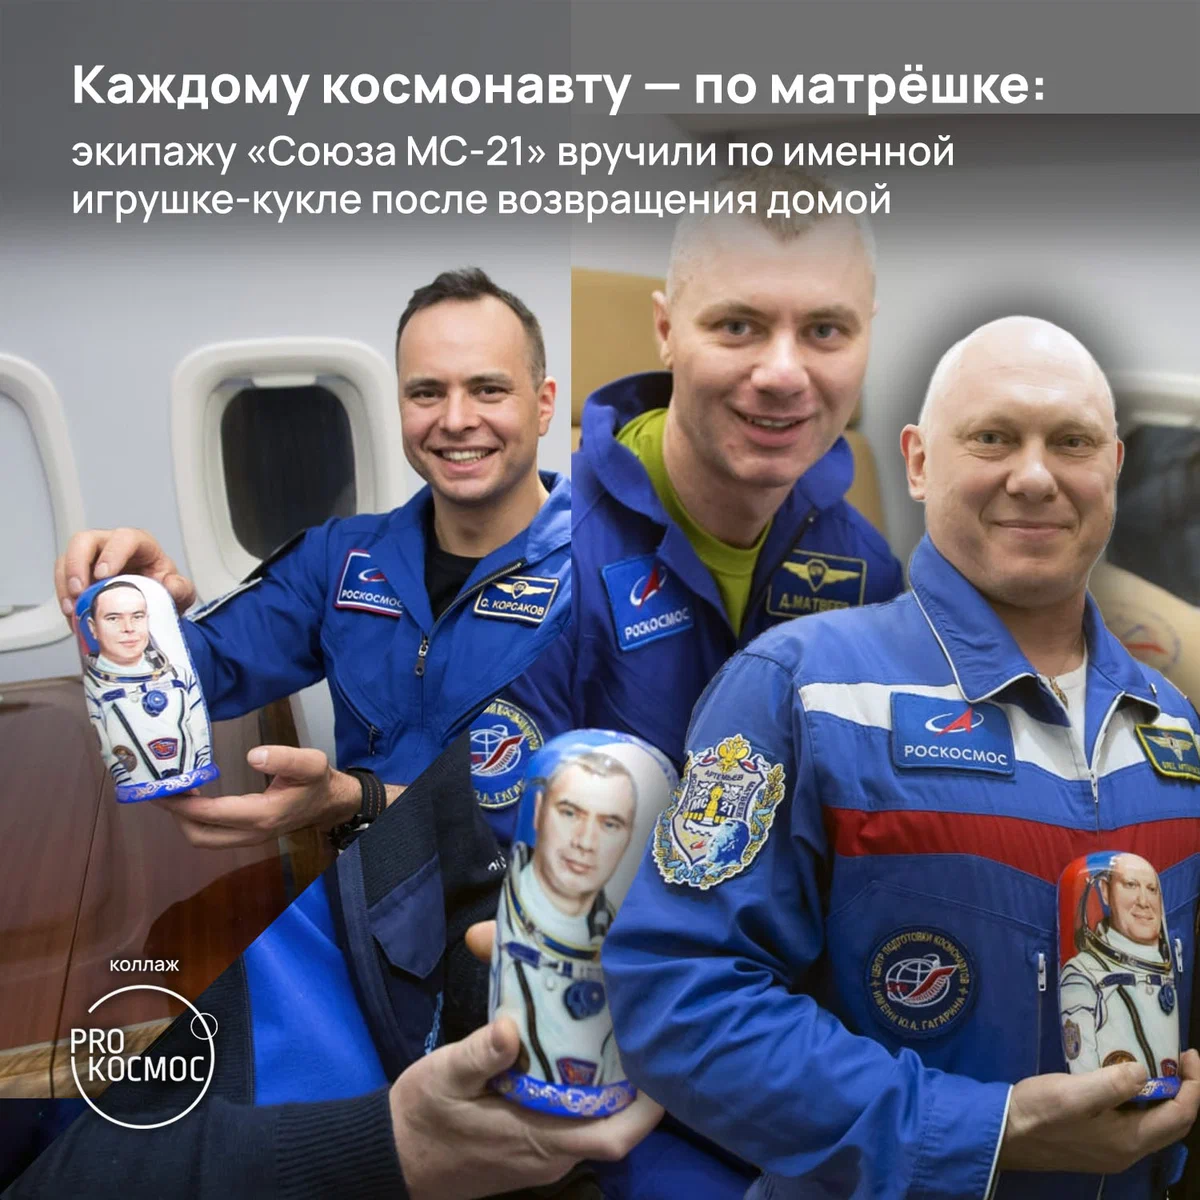 Каждому космонавту — по матрёшке: экипажу «Союза МС-21» вручили по именной игрушке-кукле после возвращения домой height=1200px width=1200px